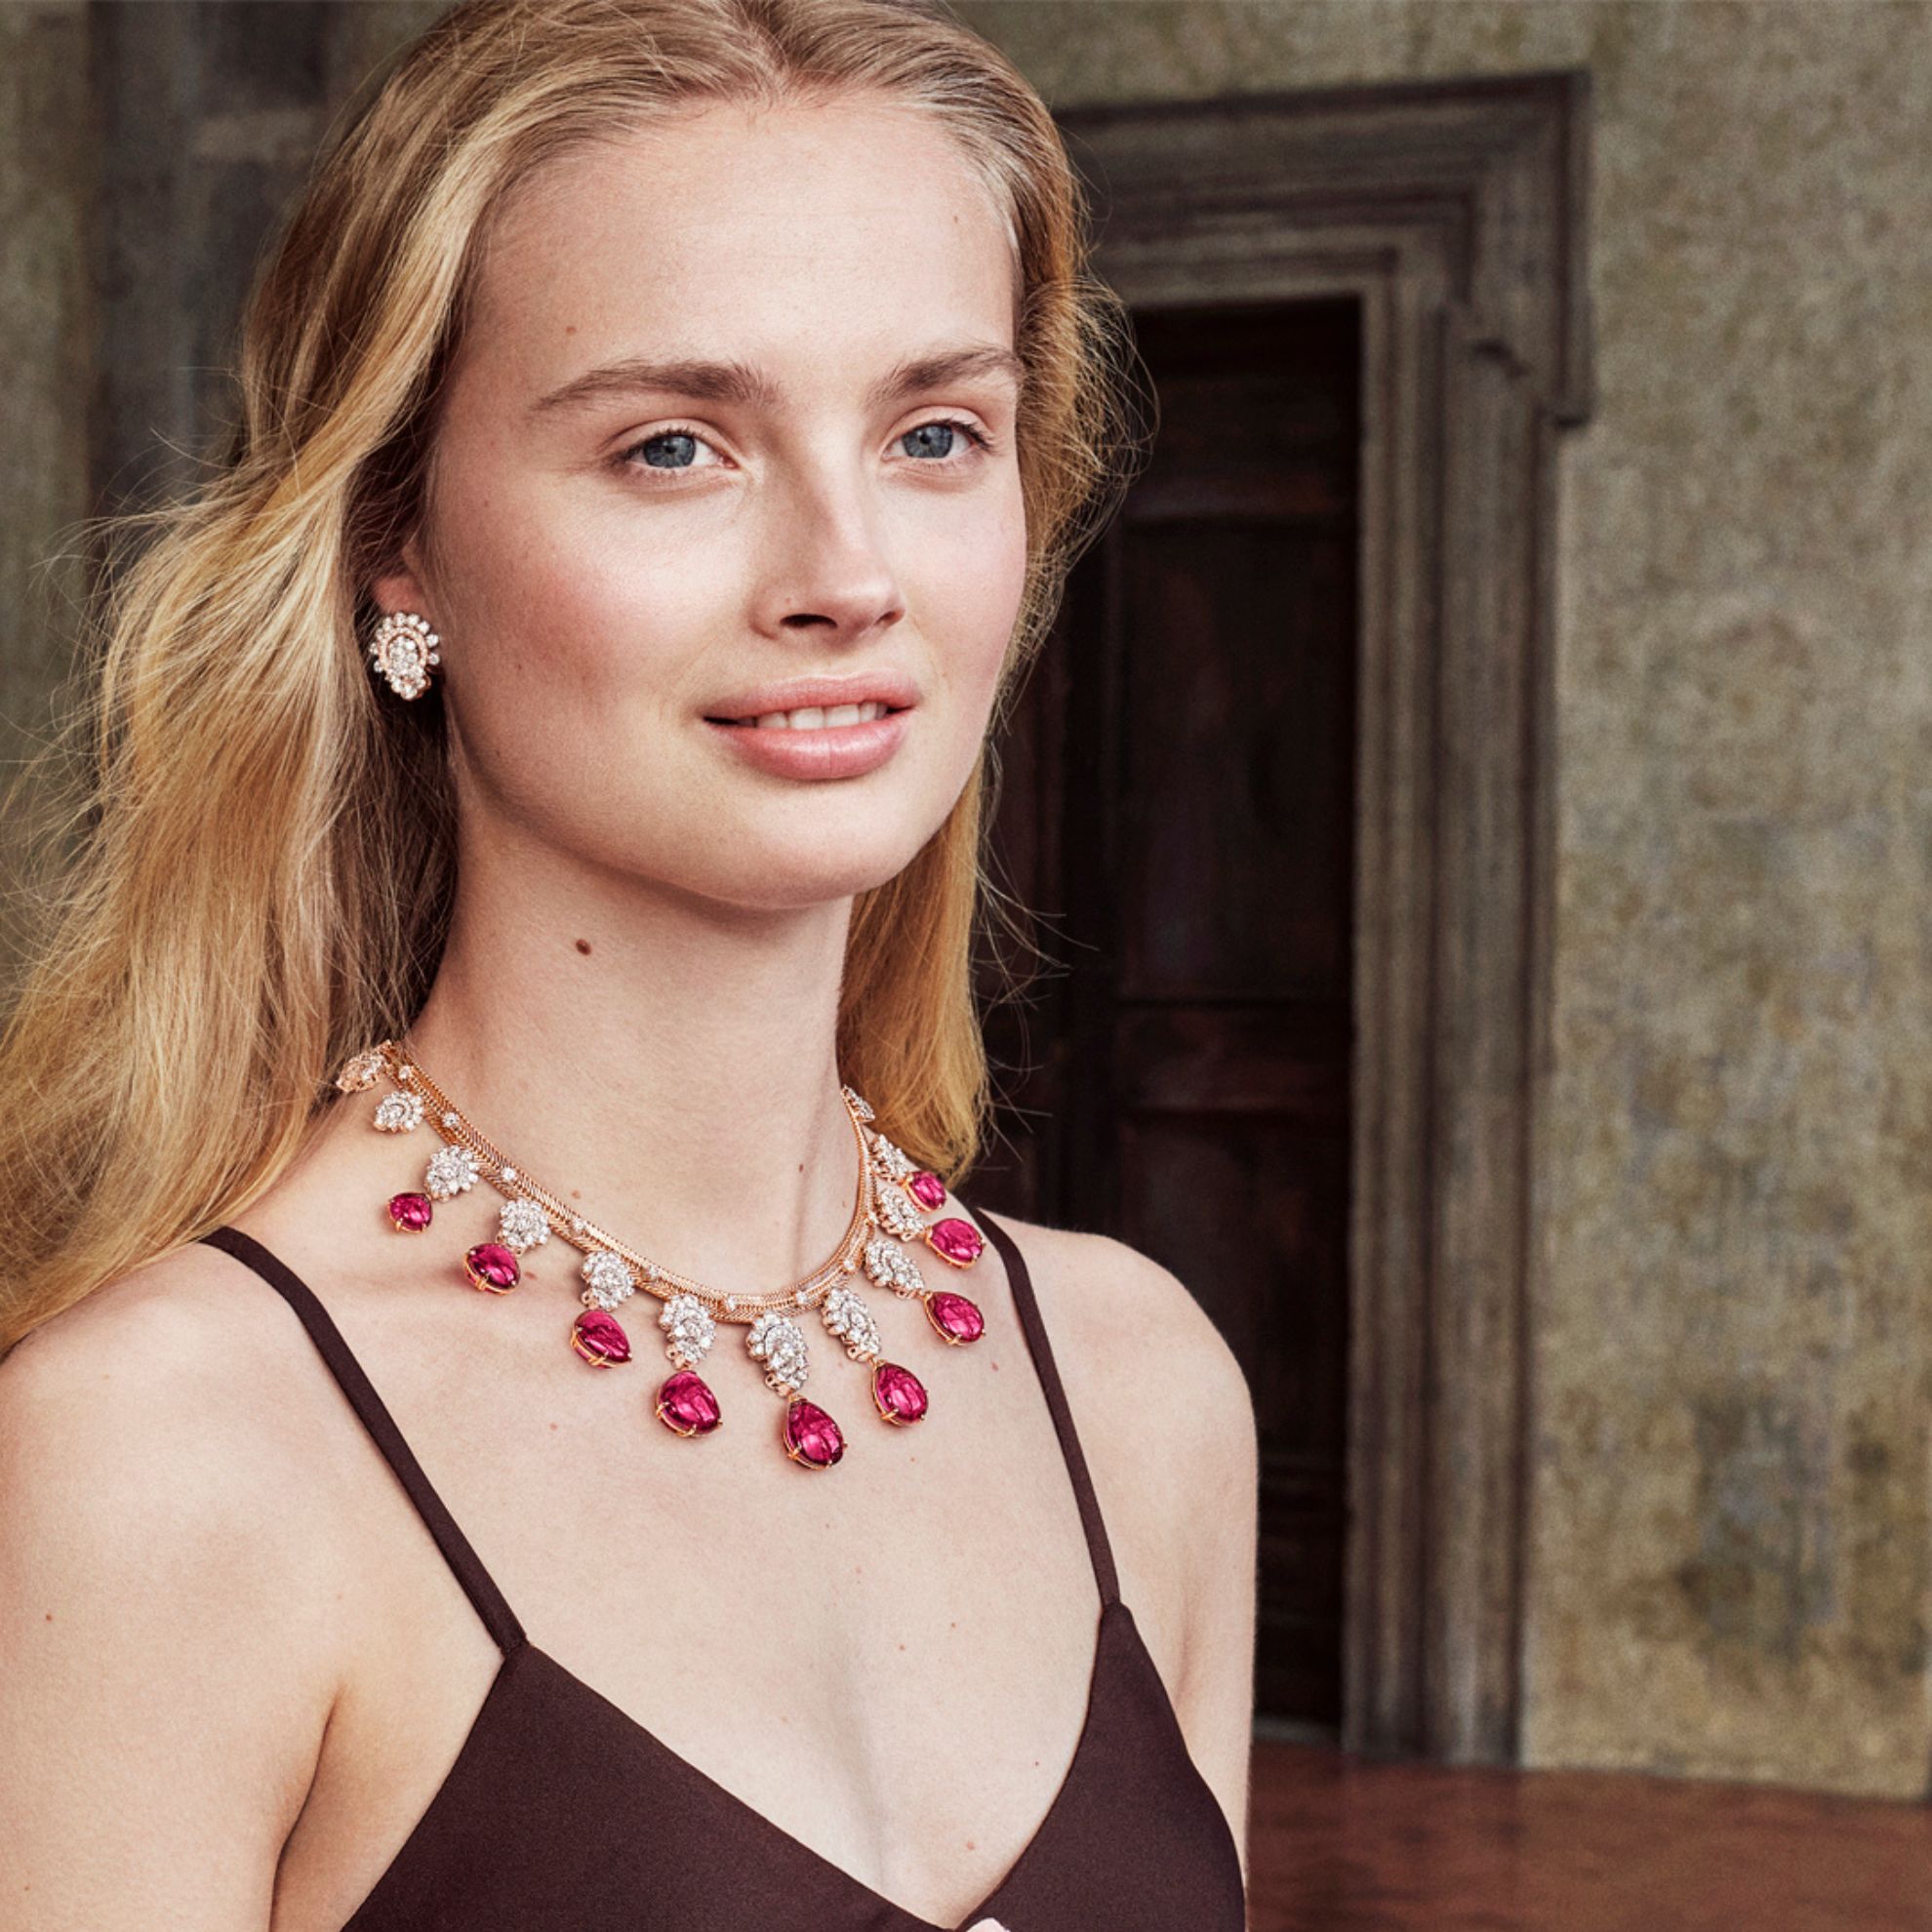 Villanova necklace and earrings with detachable pendants